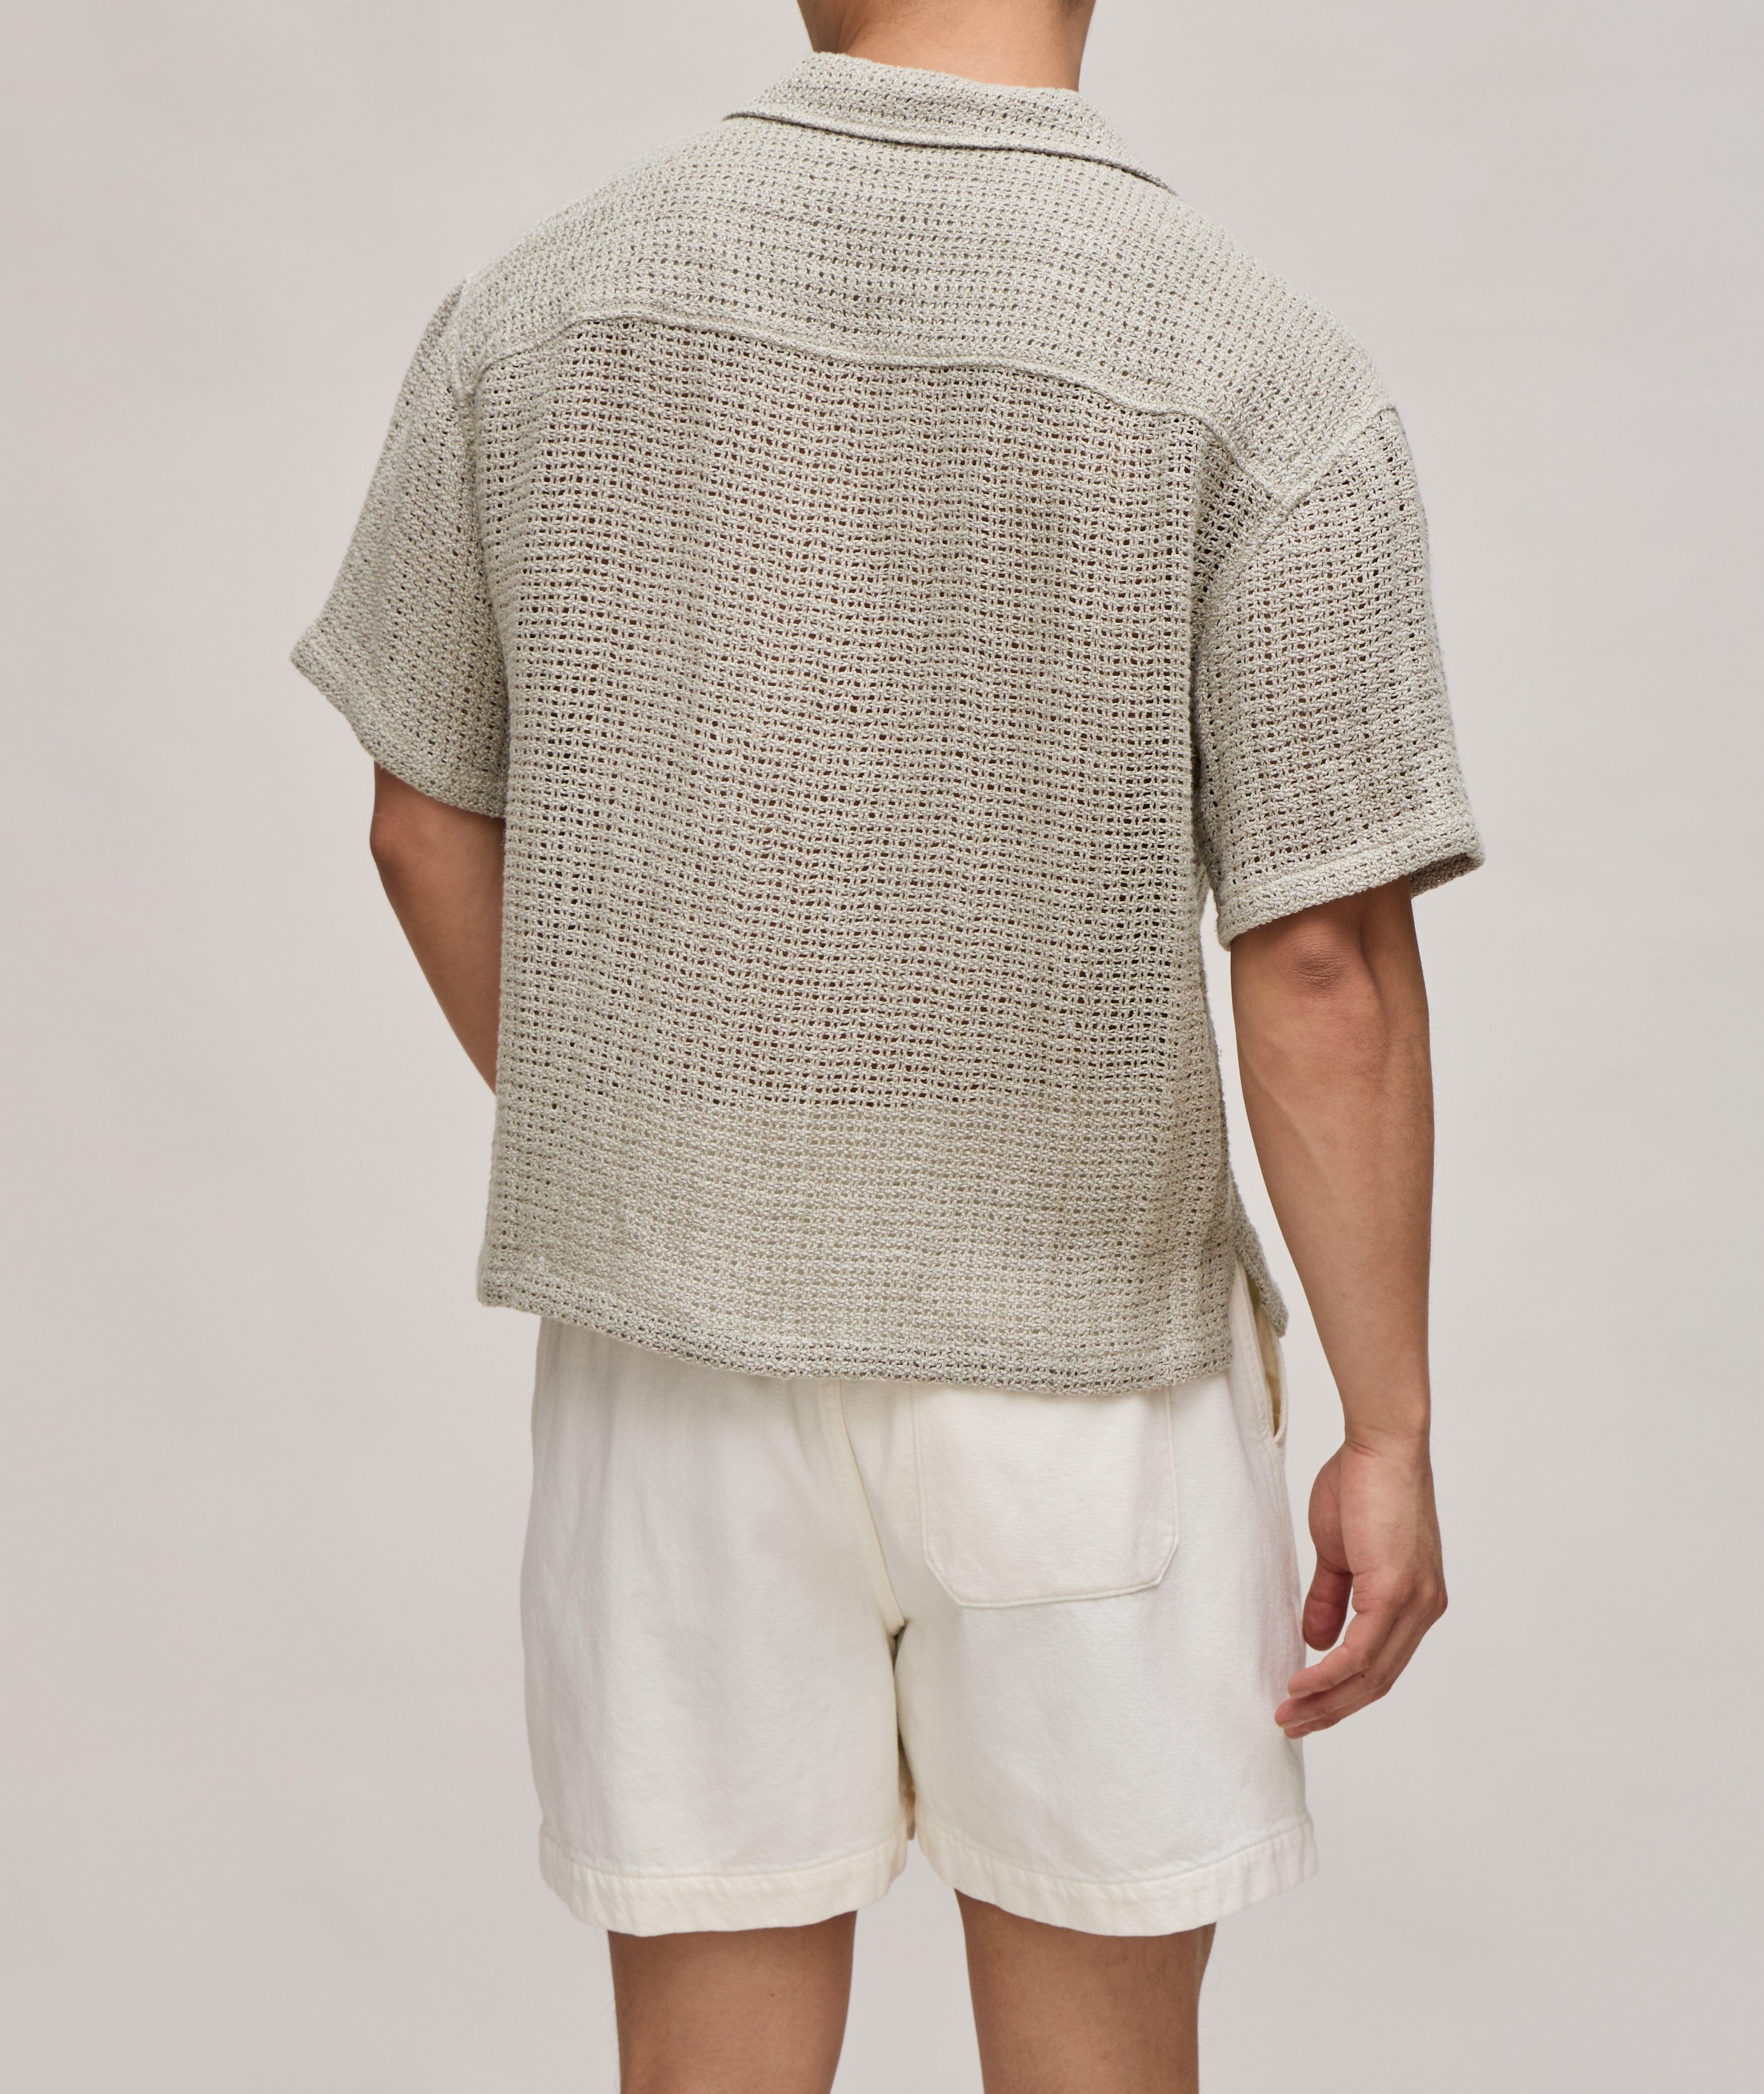 Crochet Open Weave Shirt